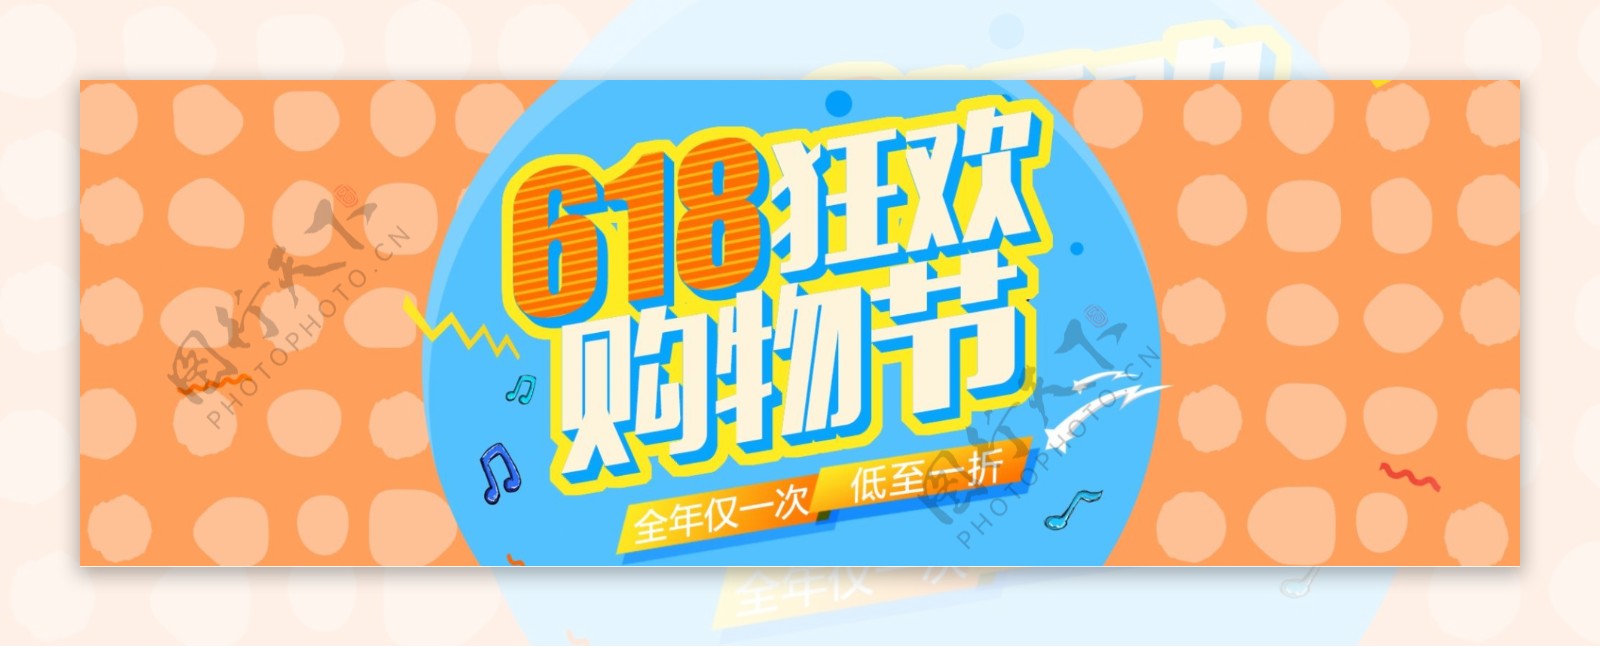 电商618购物狂欢节banner